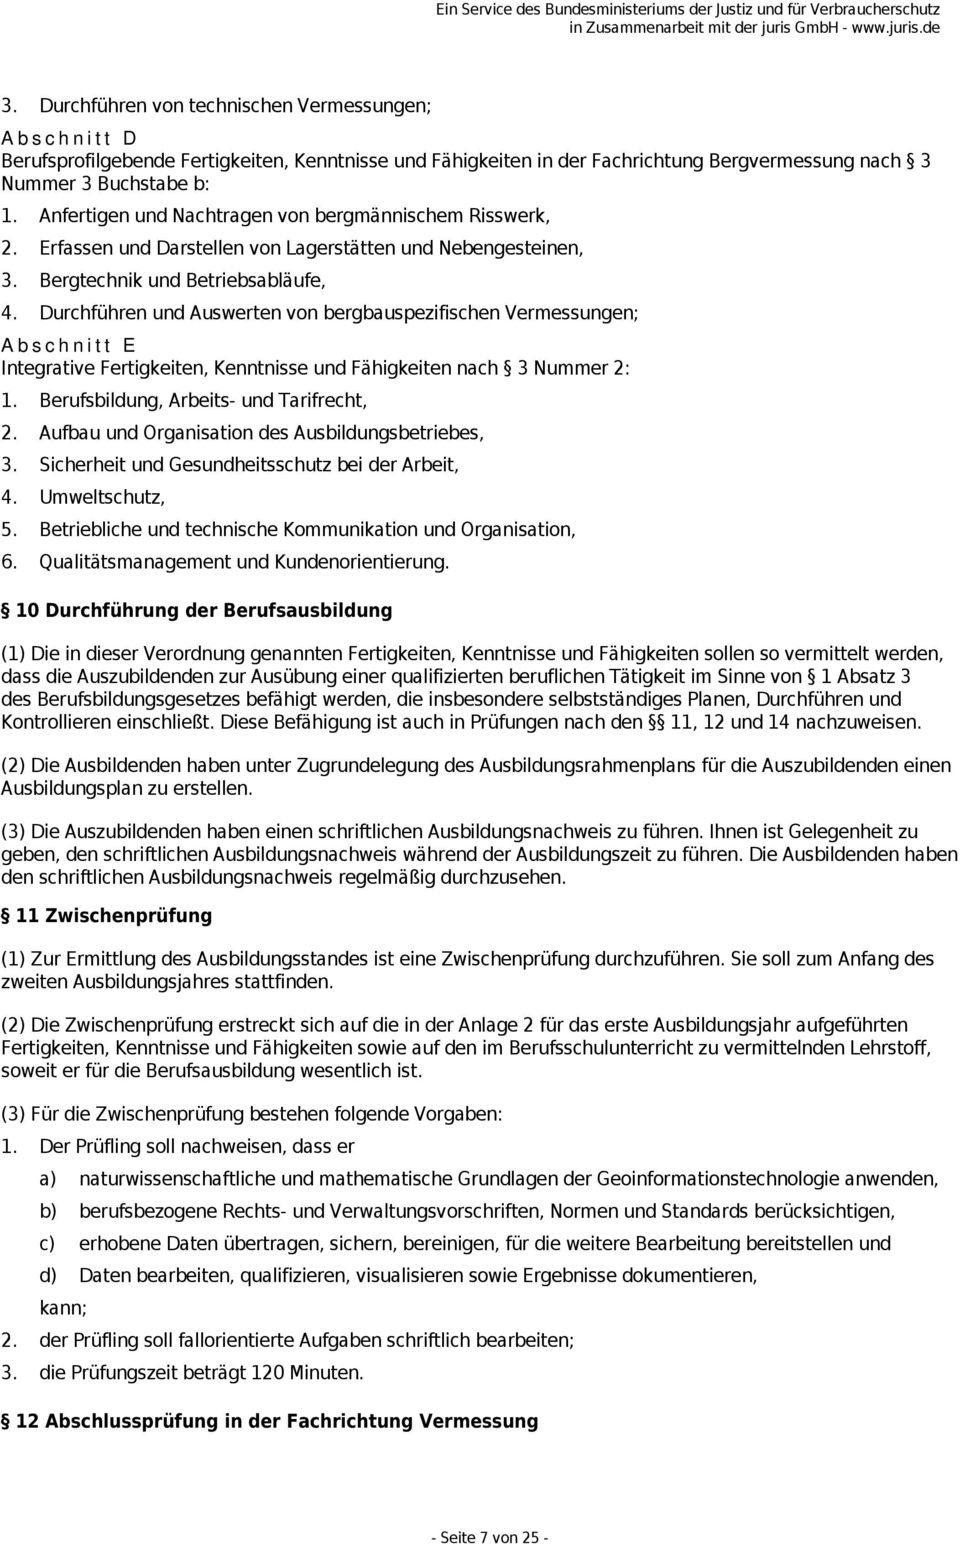 Durchführen und Auswerten von bergbauspezifischen Vermessungen; Abschnitt E Integrative Fertigkeiten, nach 3 Nummer 2: 1. Berufsbildung, Arbeits- und Tarifrecht, 2.